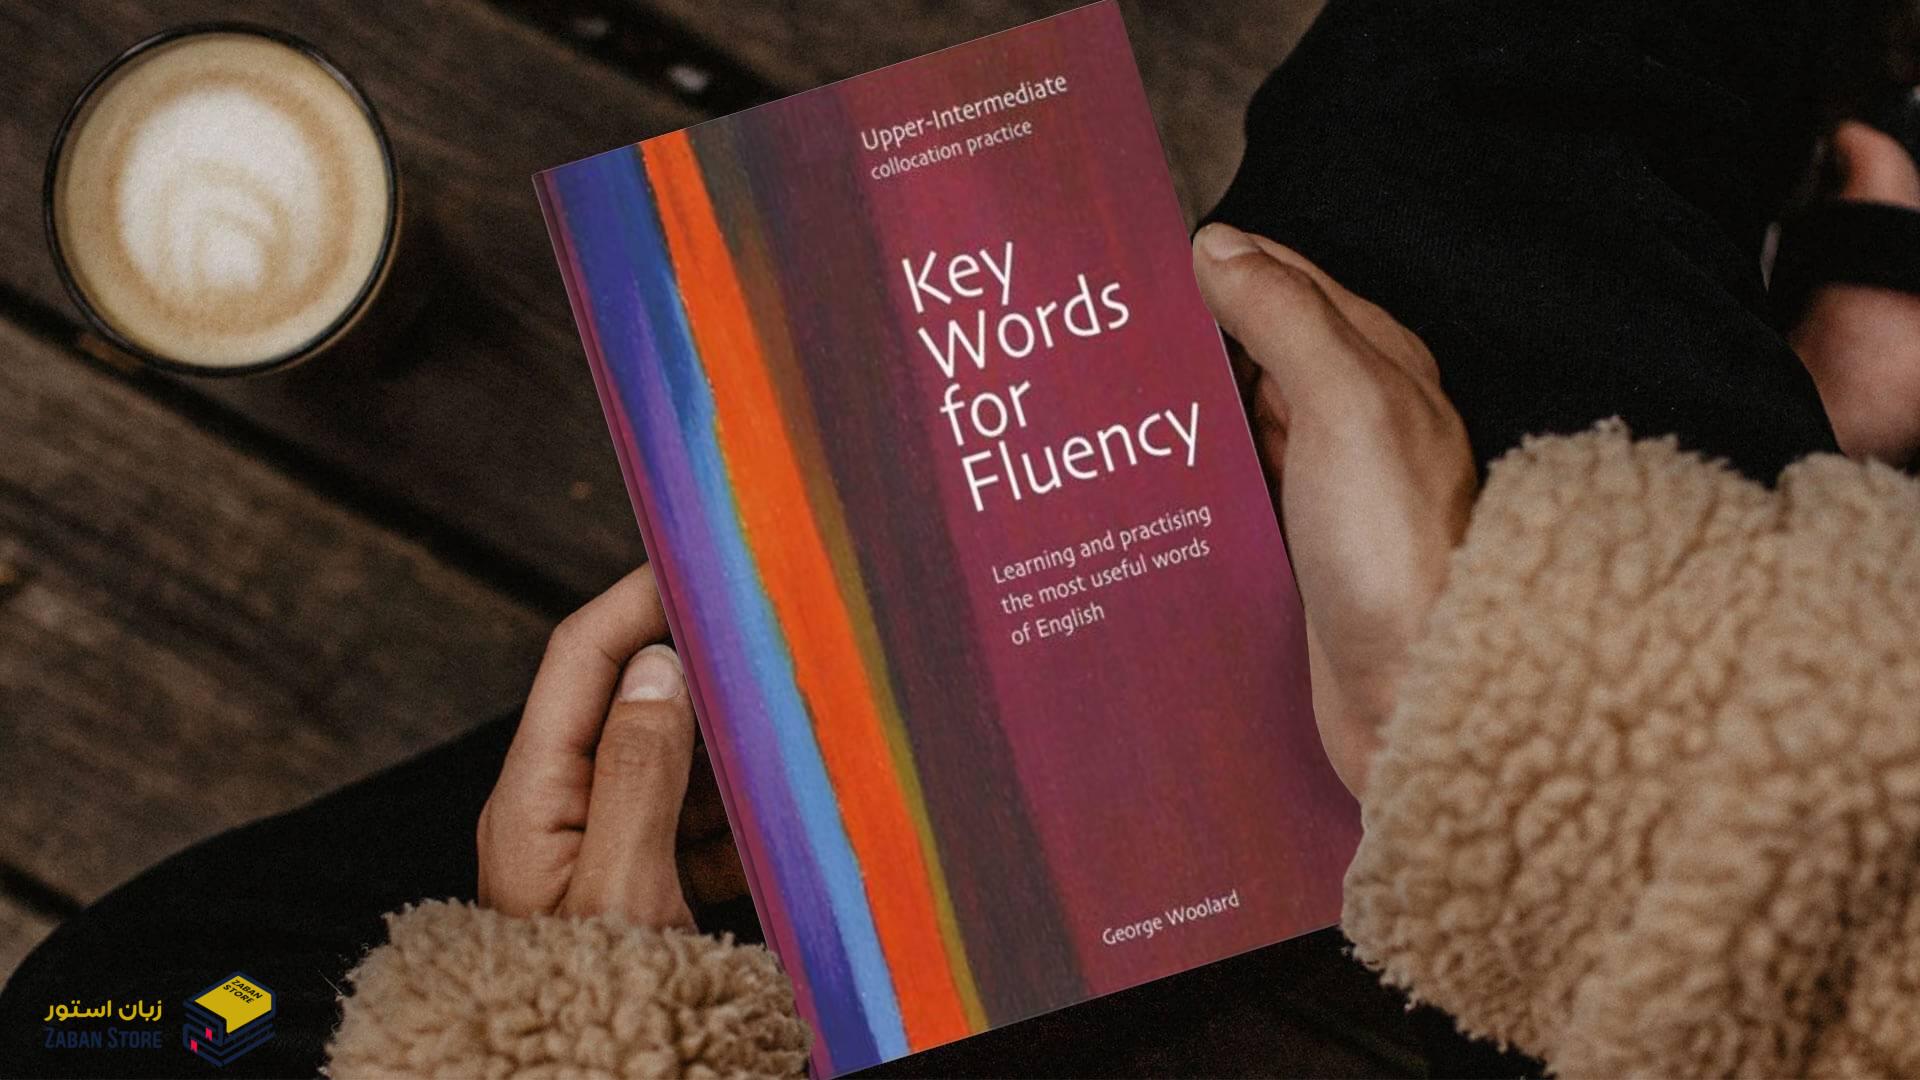 خرید کتاب زبان | فروشگاه اینترنتی کتاب زبان | Key Words for Fluency Upper Intermediate | کی وردز فور فلوئنسی آپر اینترمدیت